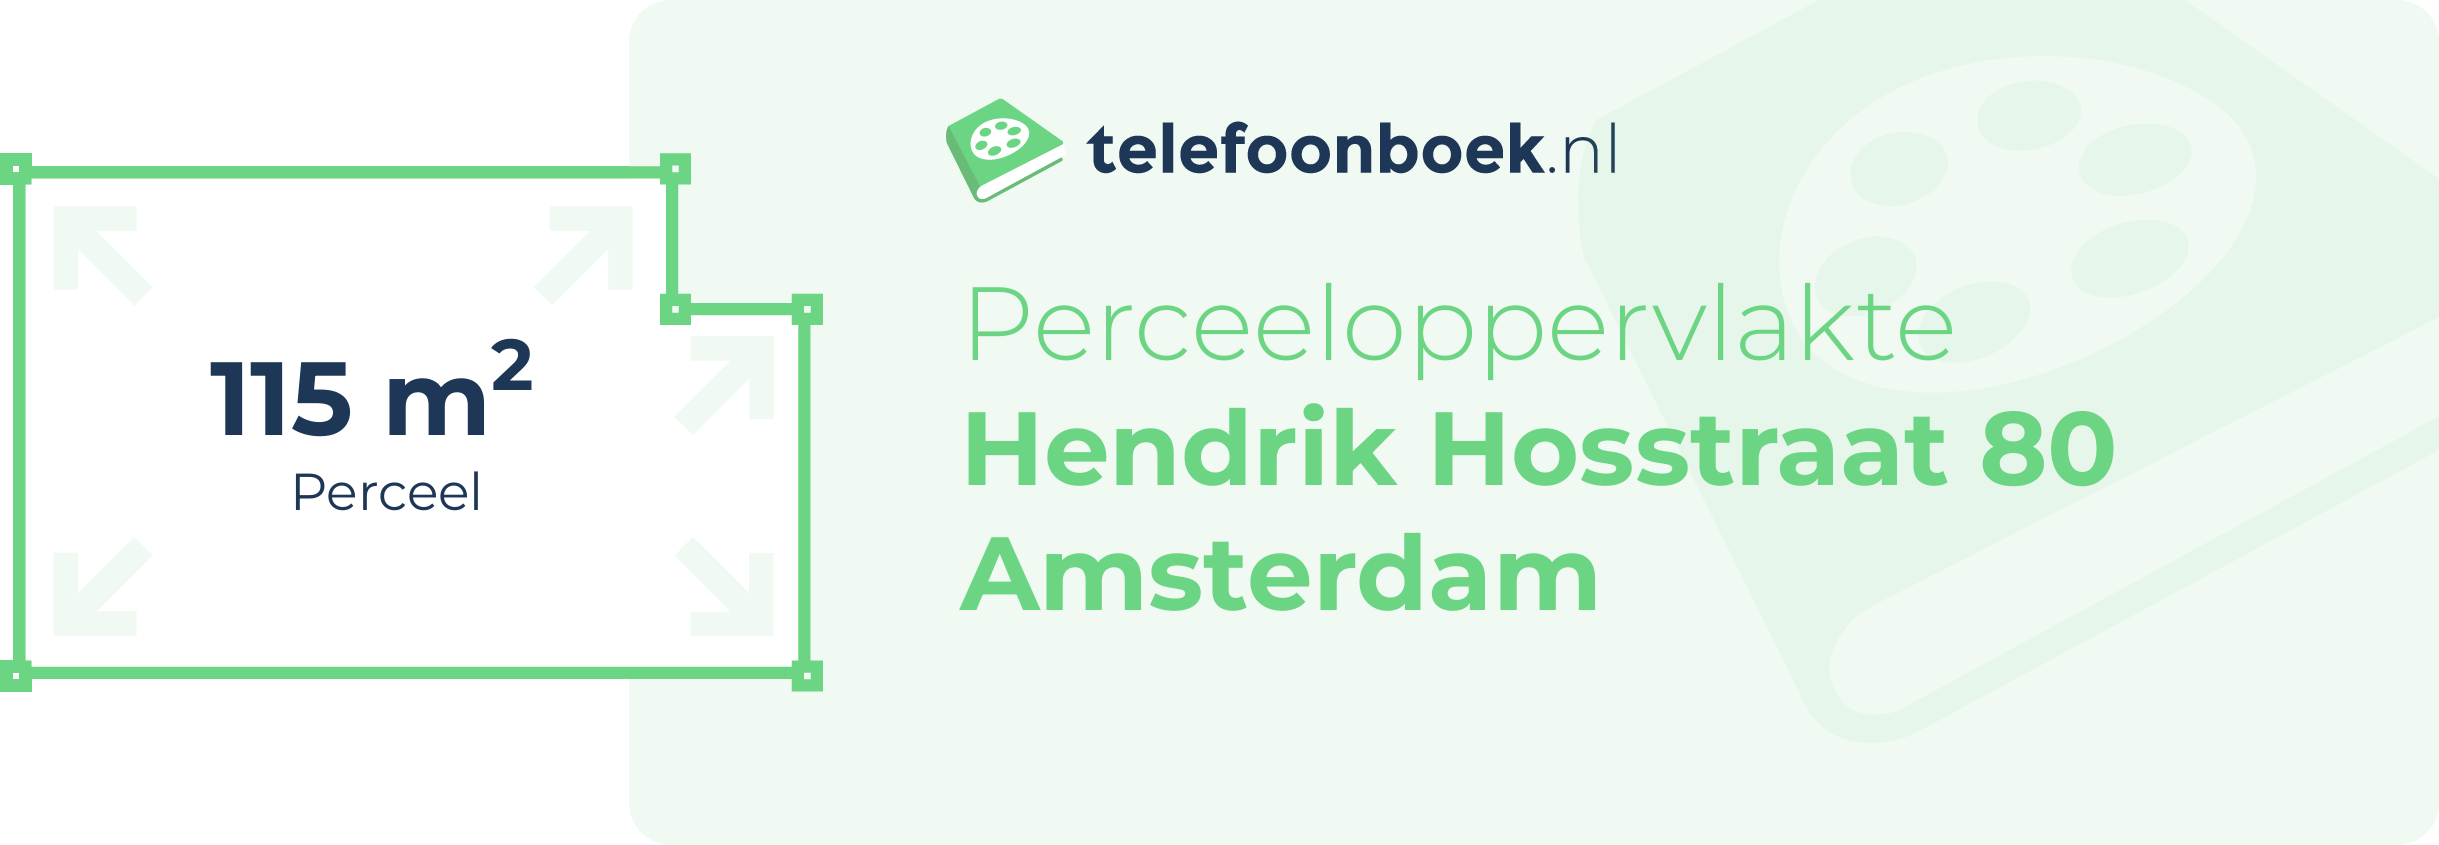 Perceeloppervlakte Hendrik Hosstraat 80 Amsterdam